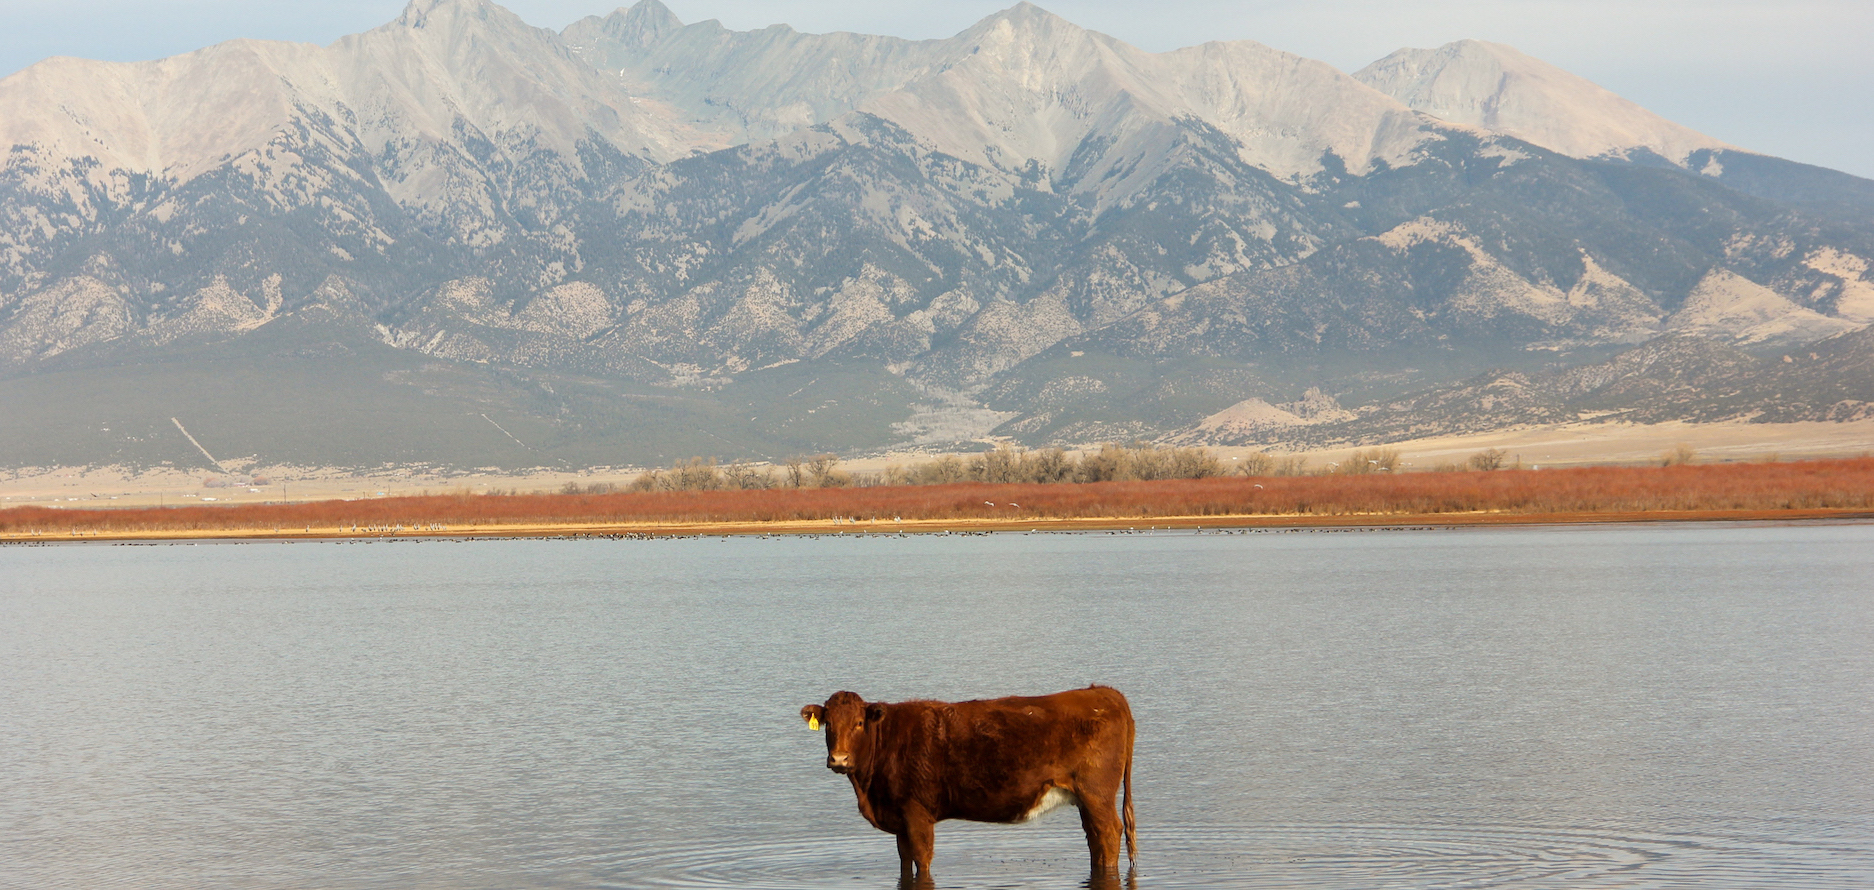 Cow in Reservoir, Spanish Peaks. Photo by Allie Krietman